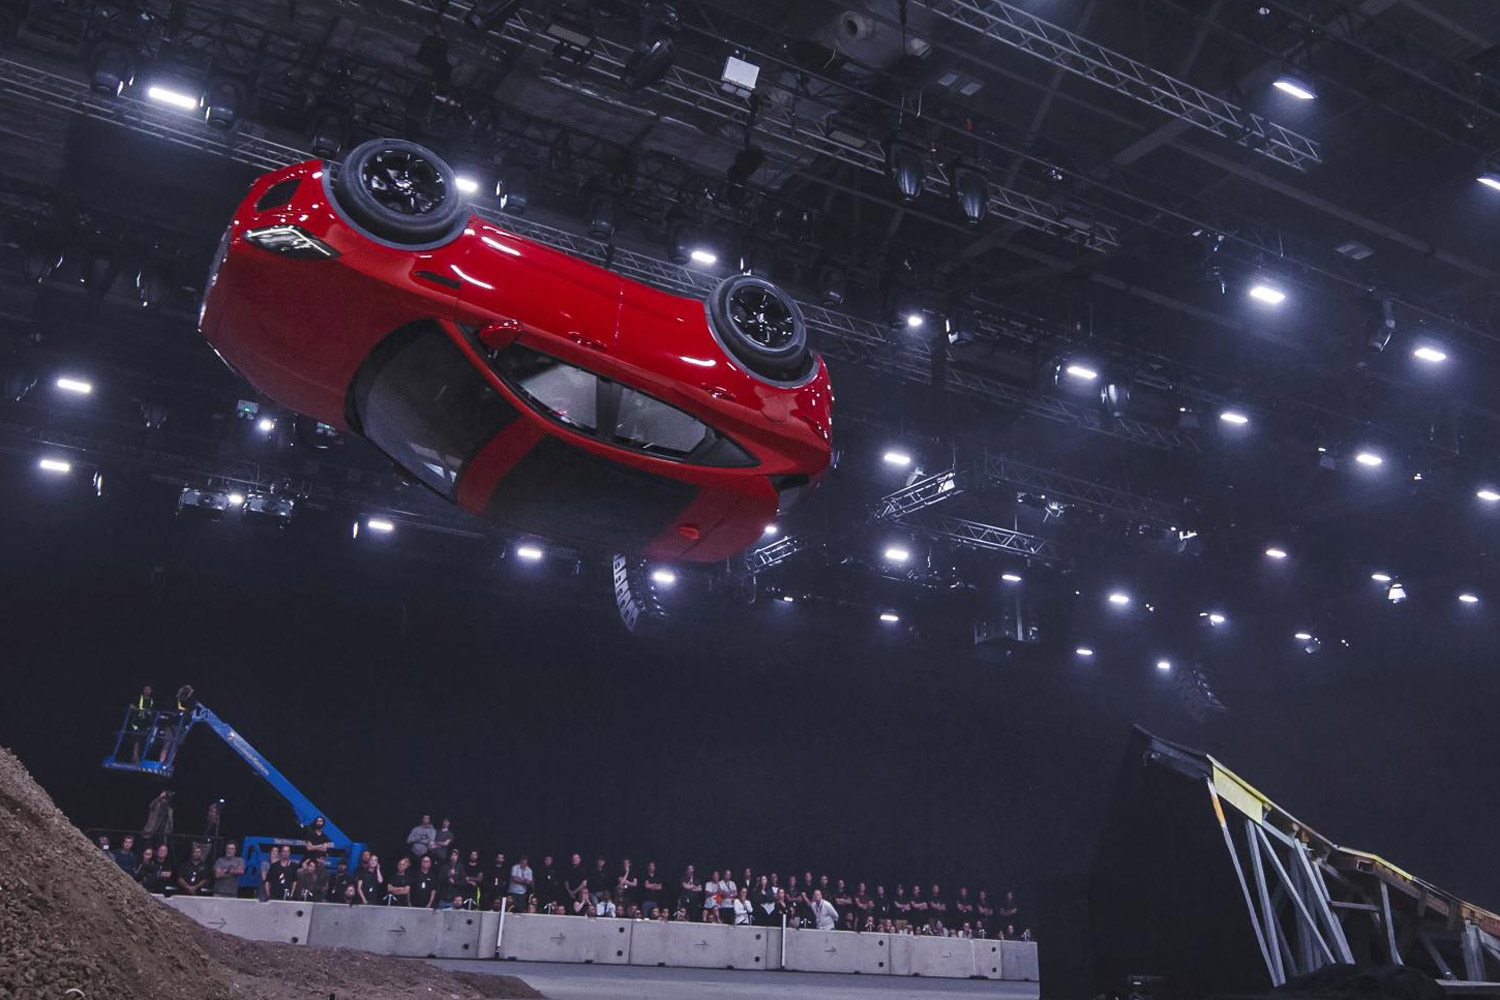 Videón a világ legnagyobb ugrálóvára, amiben egy autó repked 5